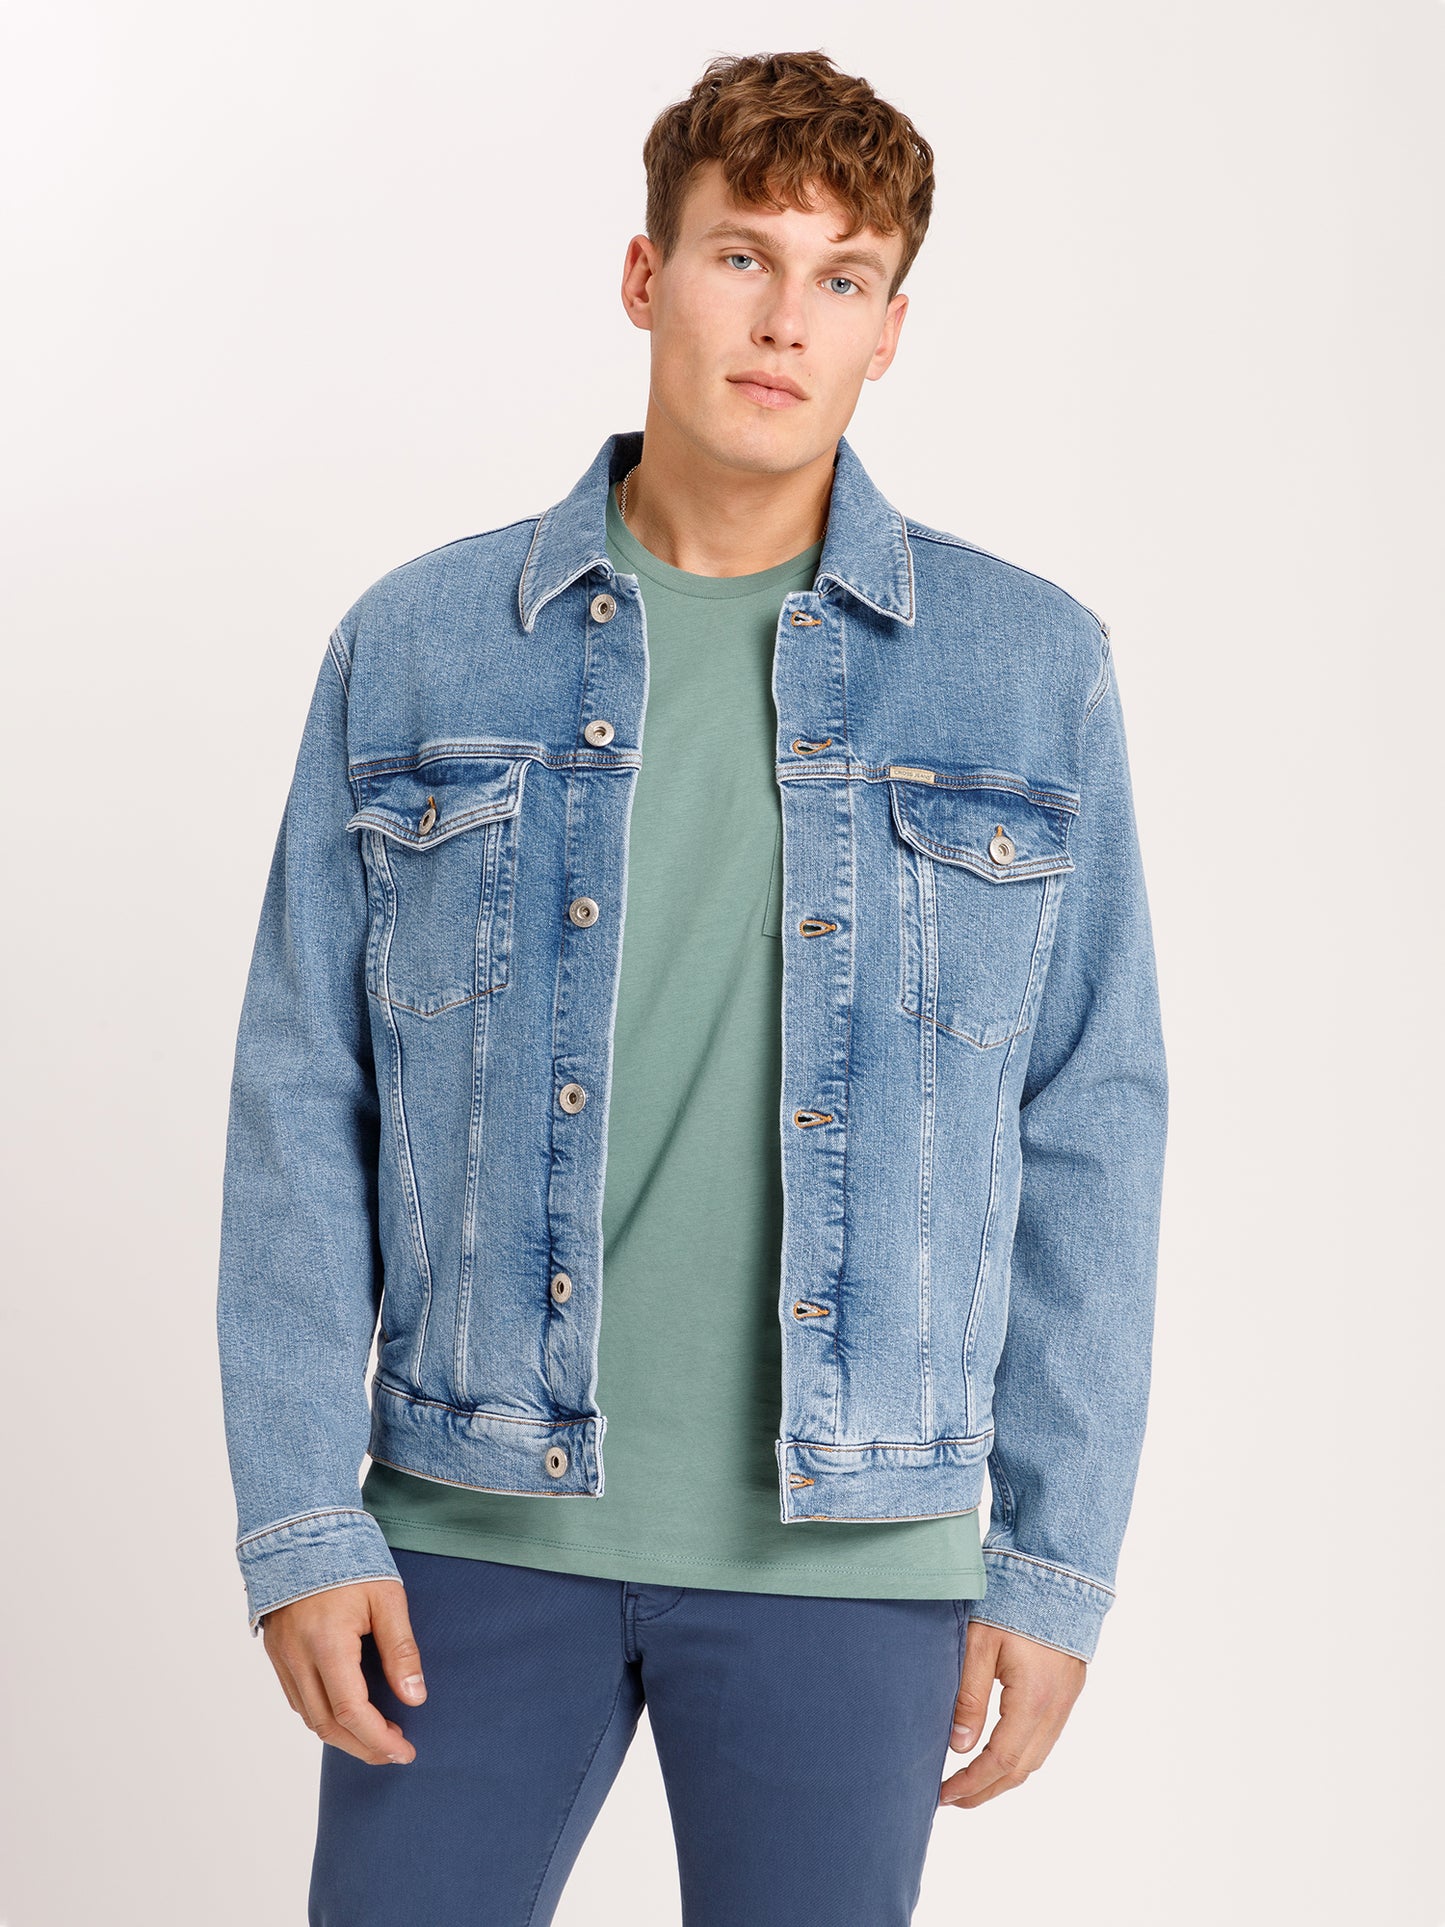 Men's denim jacket denim jacket regular fit light blue